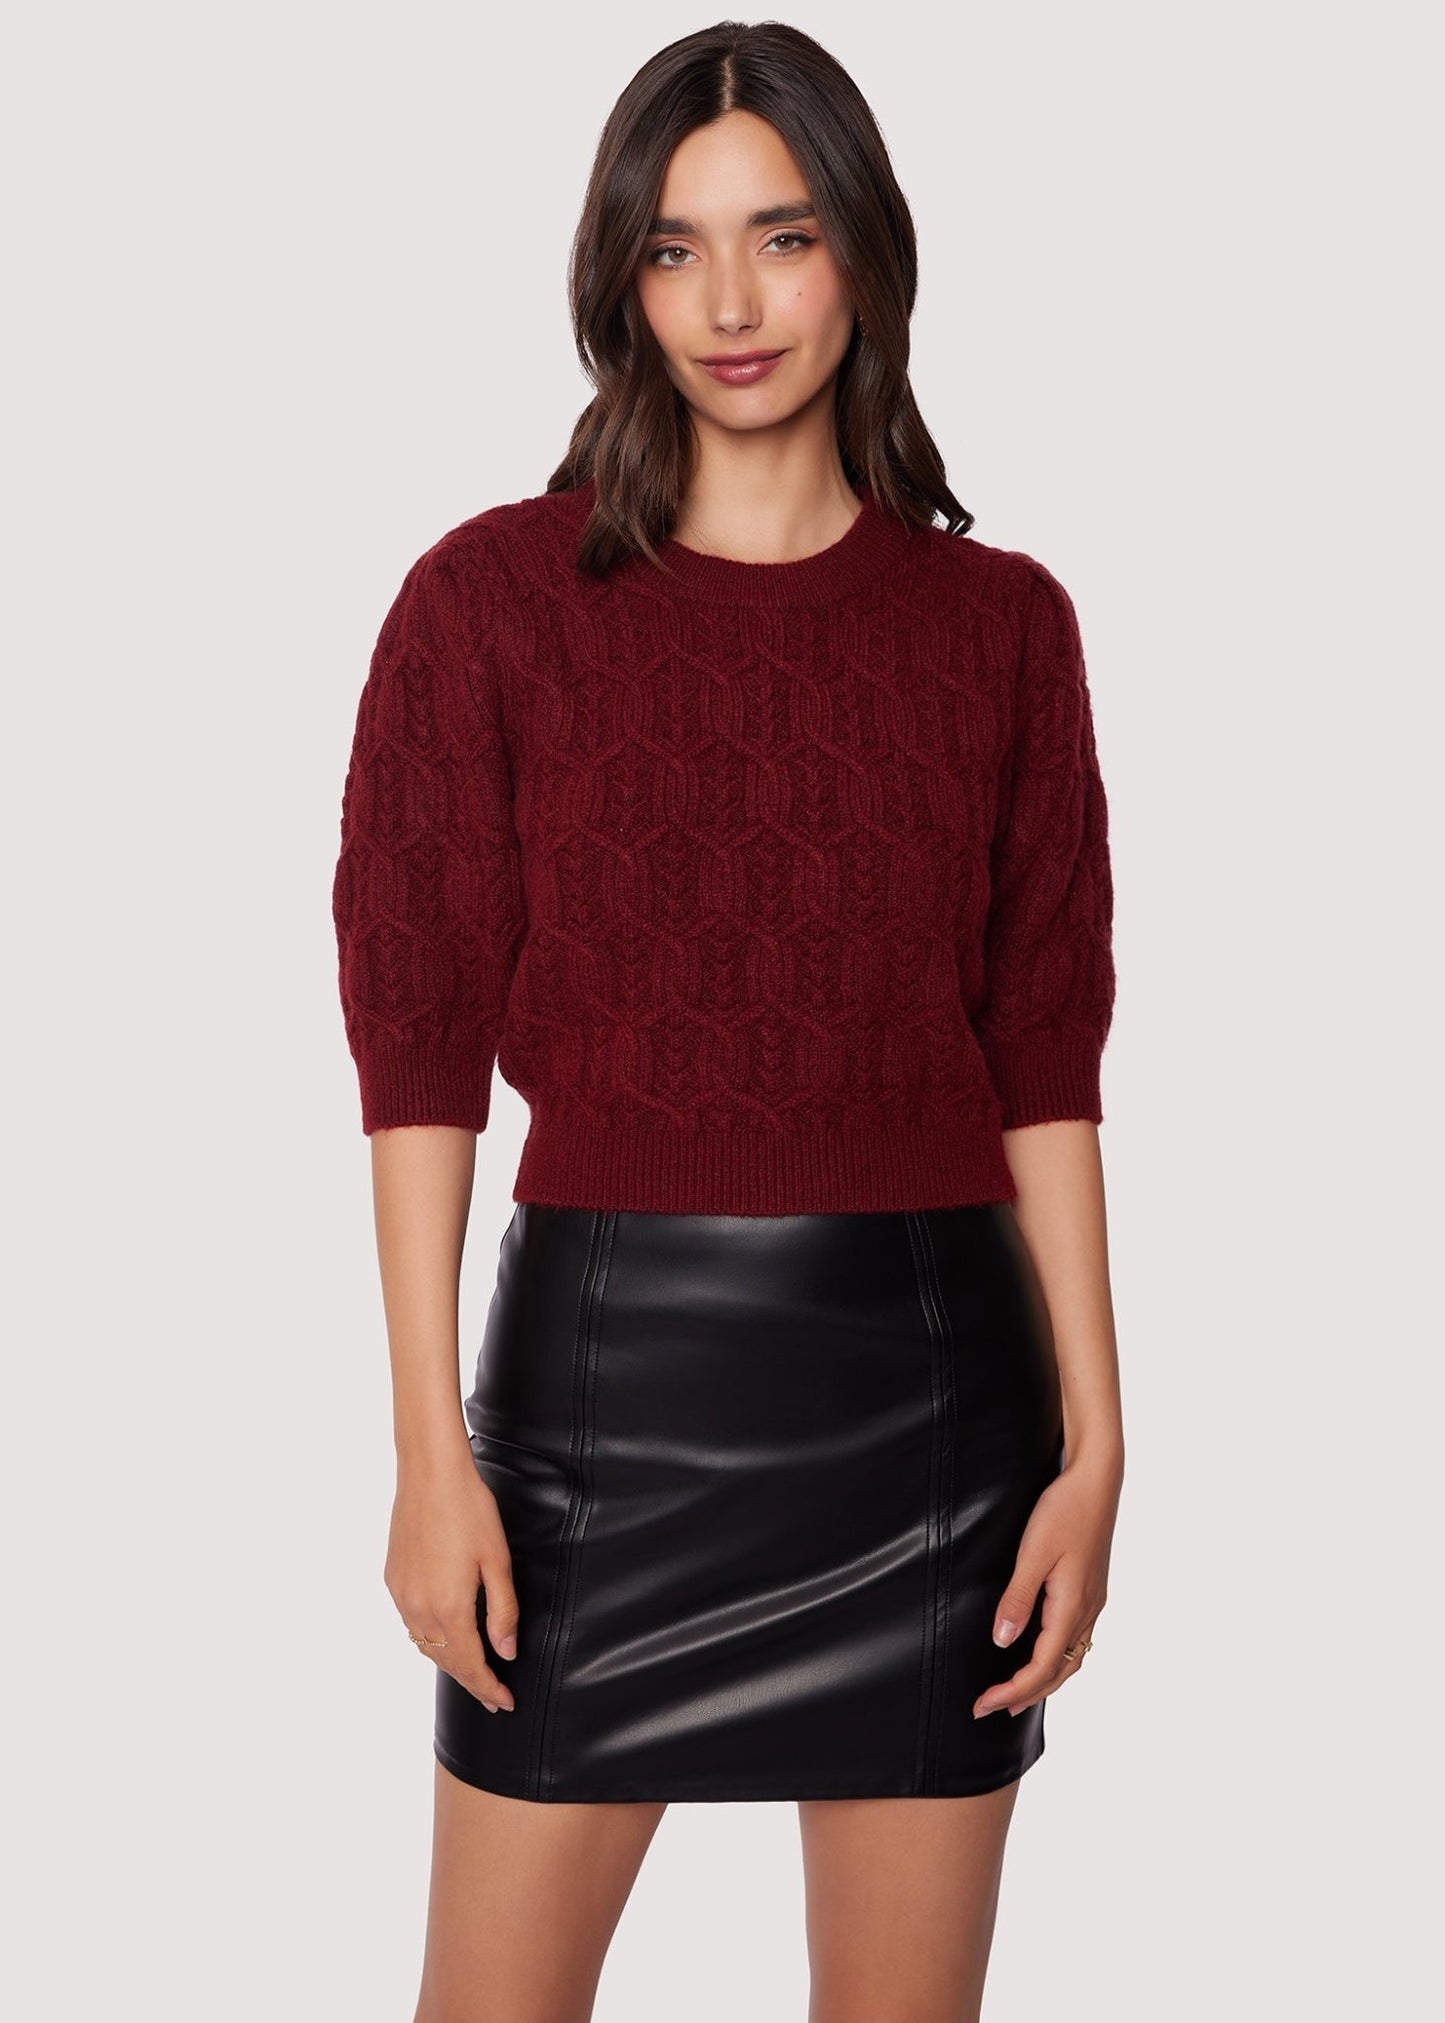 Sydney Short Sleeve Sweater - Addie Rose Boutique - Austin